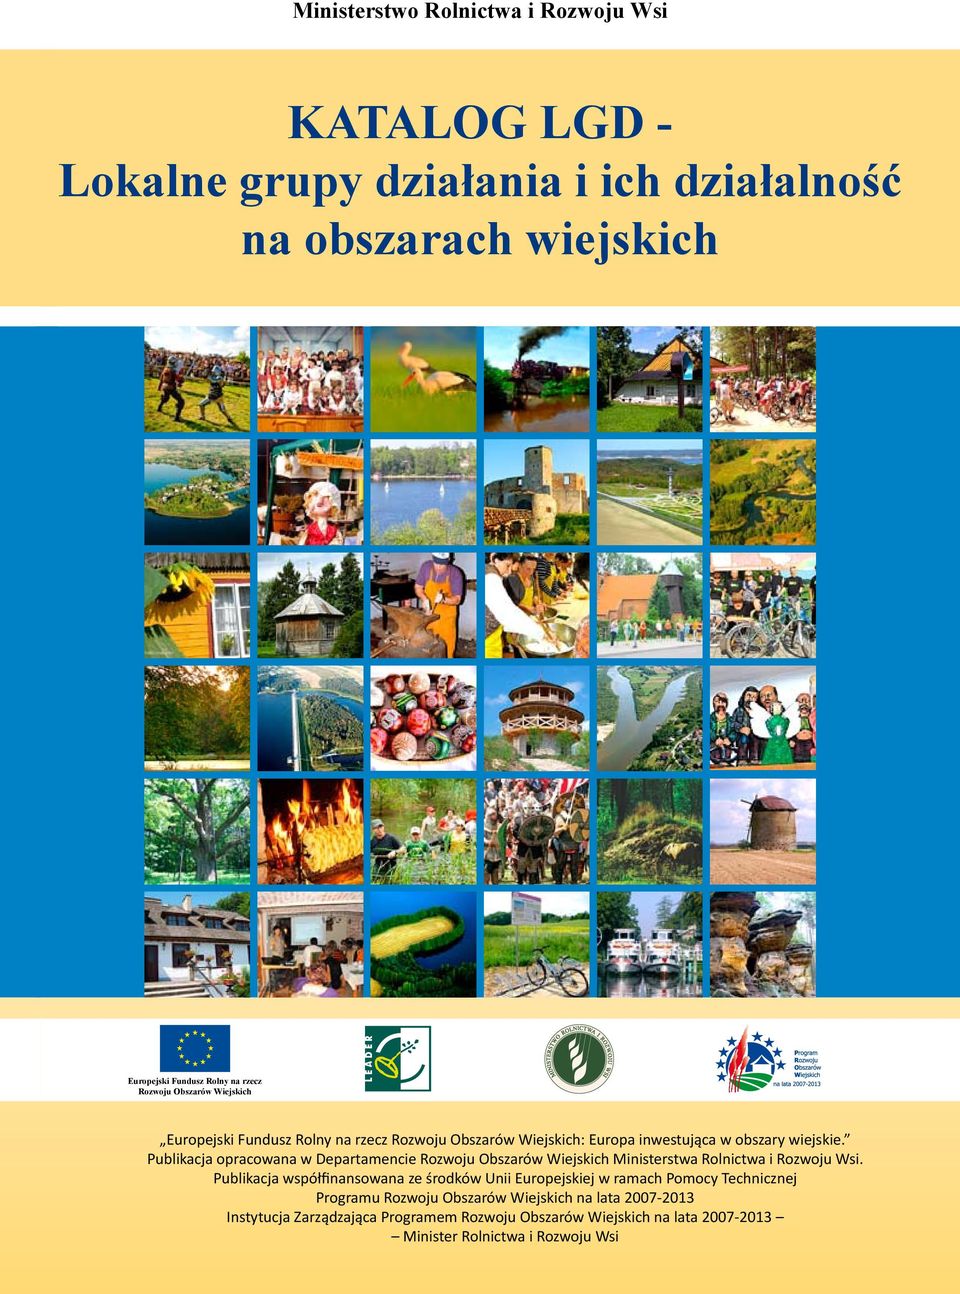 Publikacja opracowana w Departamencie Rozwoju Obszarów Wiejskich Ministerstwa Rolnictwa i Rozwoju Wsi.